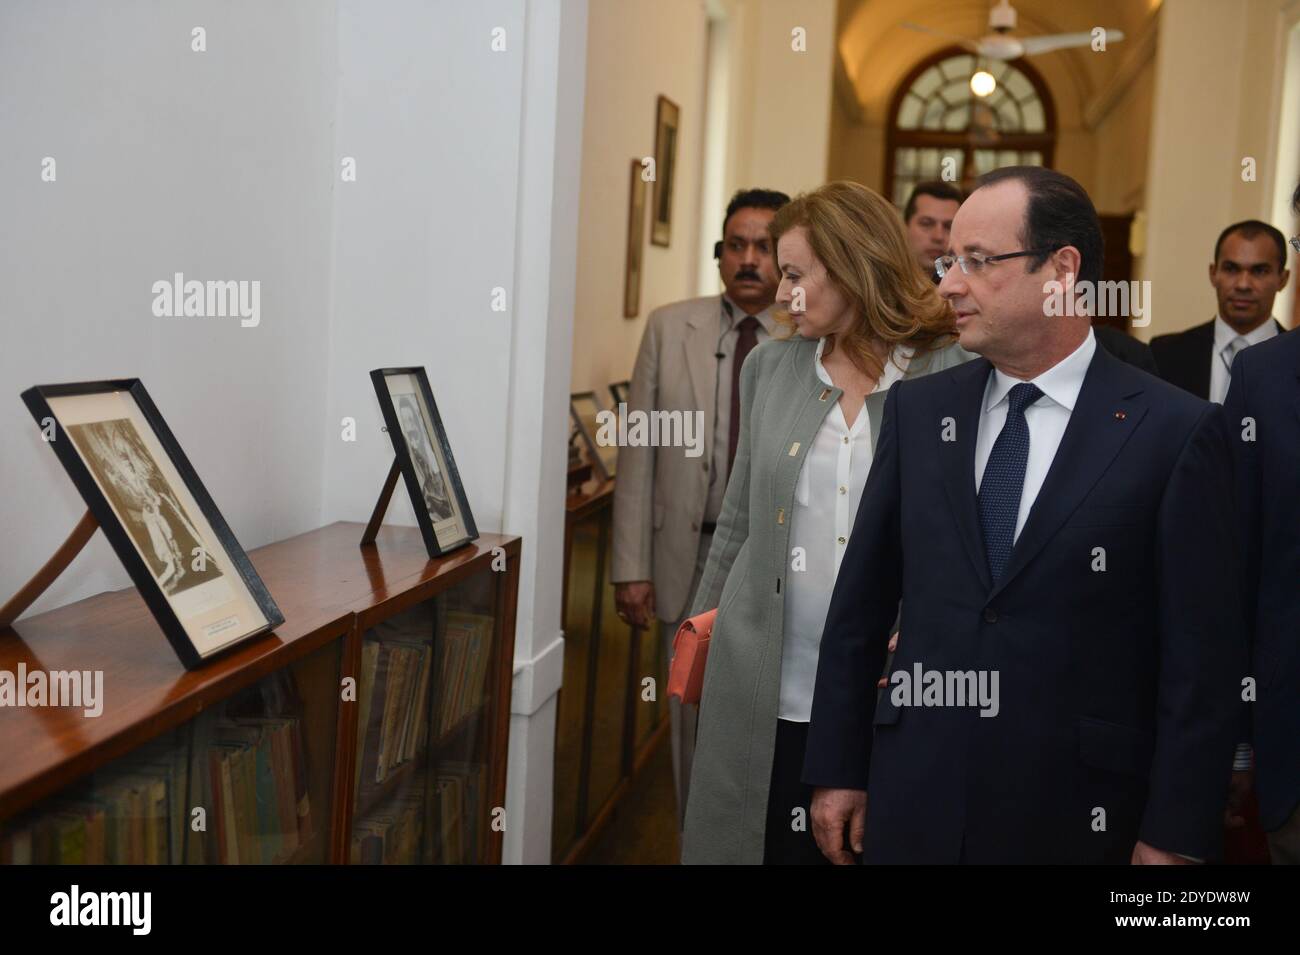 Il presidente francese Francois Hollande e Valerie Trierweiler visitano il Museo Nehru, a Nuova Delhi, India, il 15 febbraio 2013. Foto di Christophe Guibbaud/ABACAPRESS.COM Foto Stock